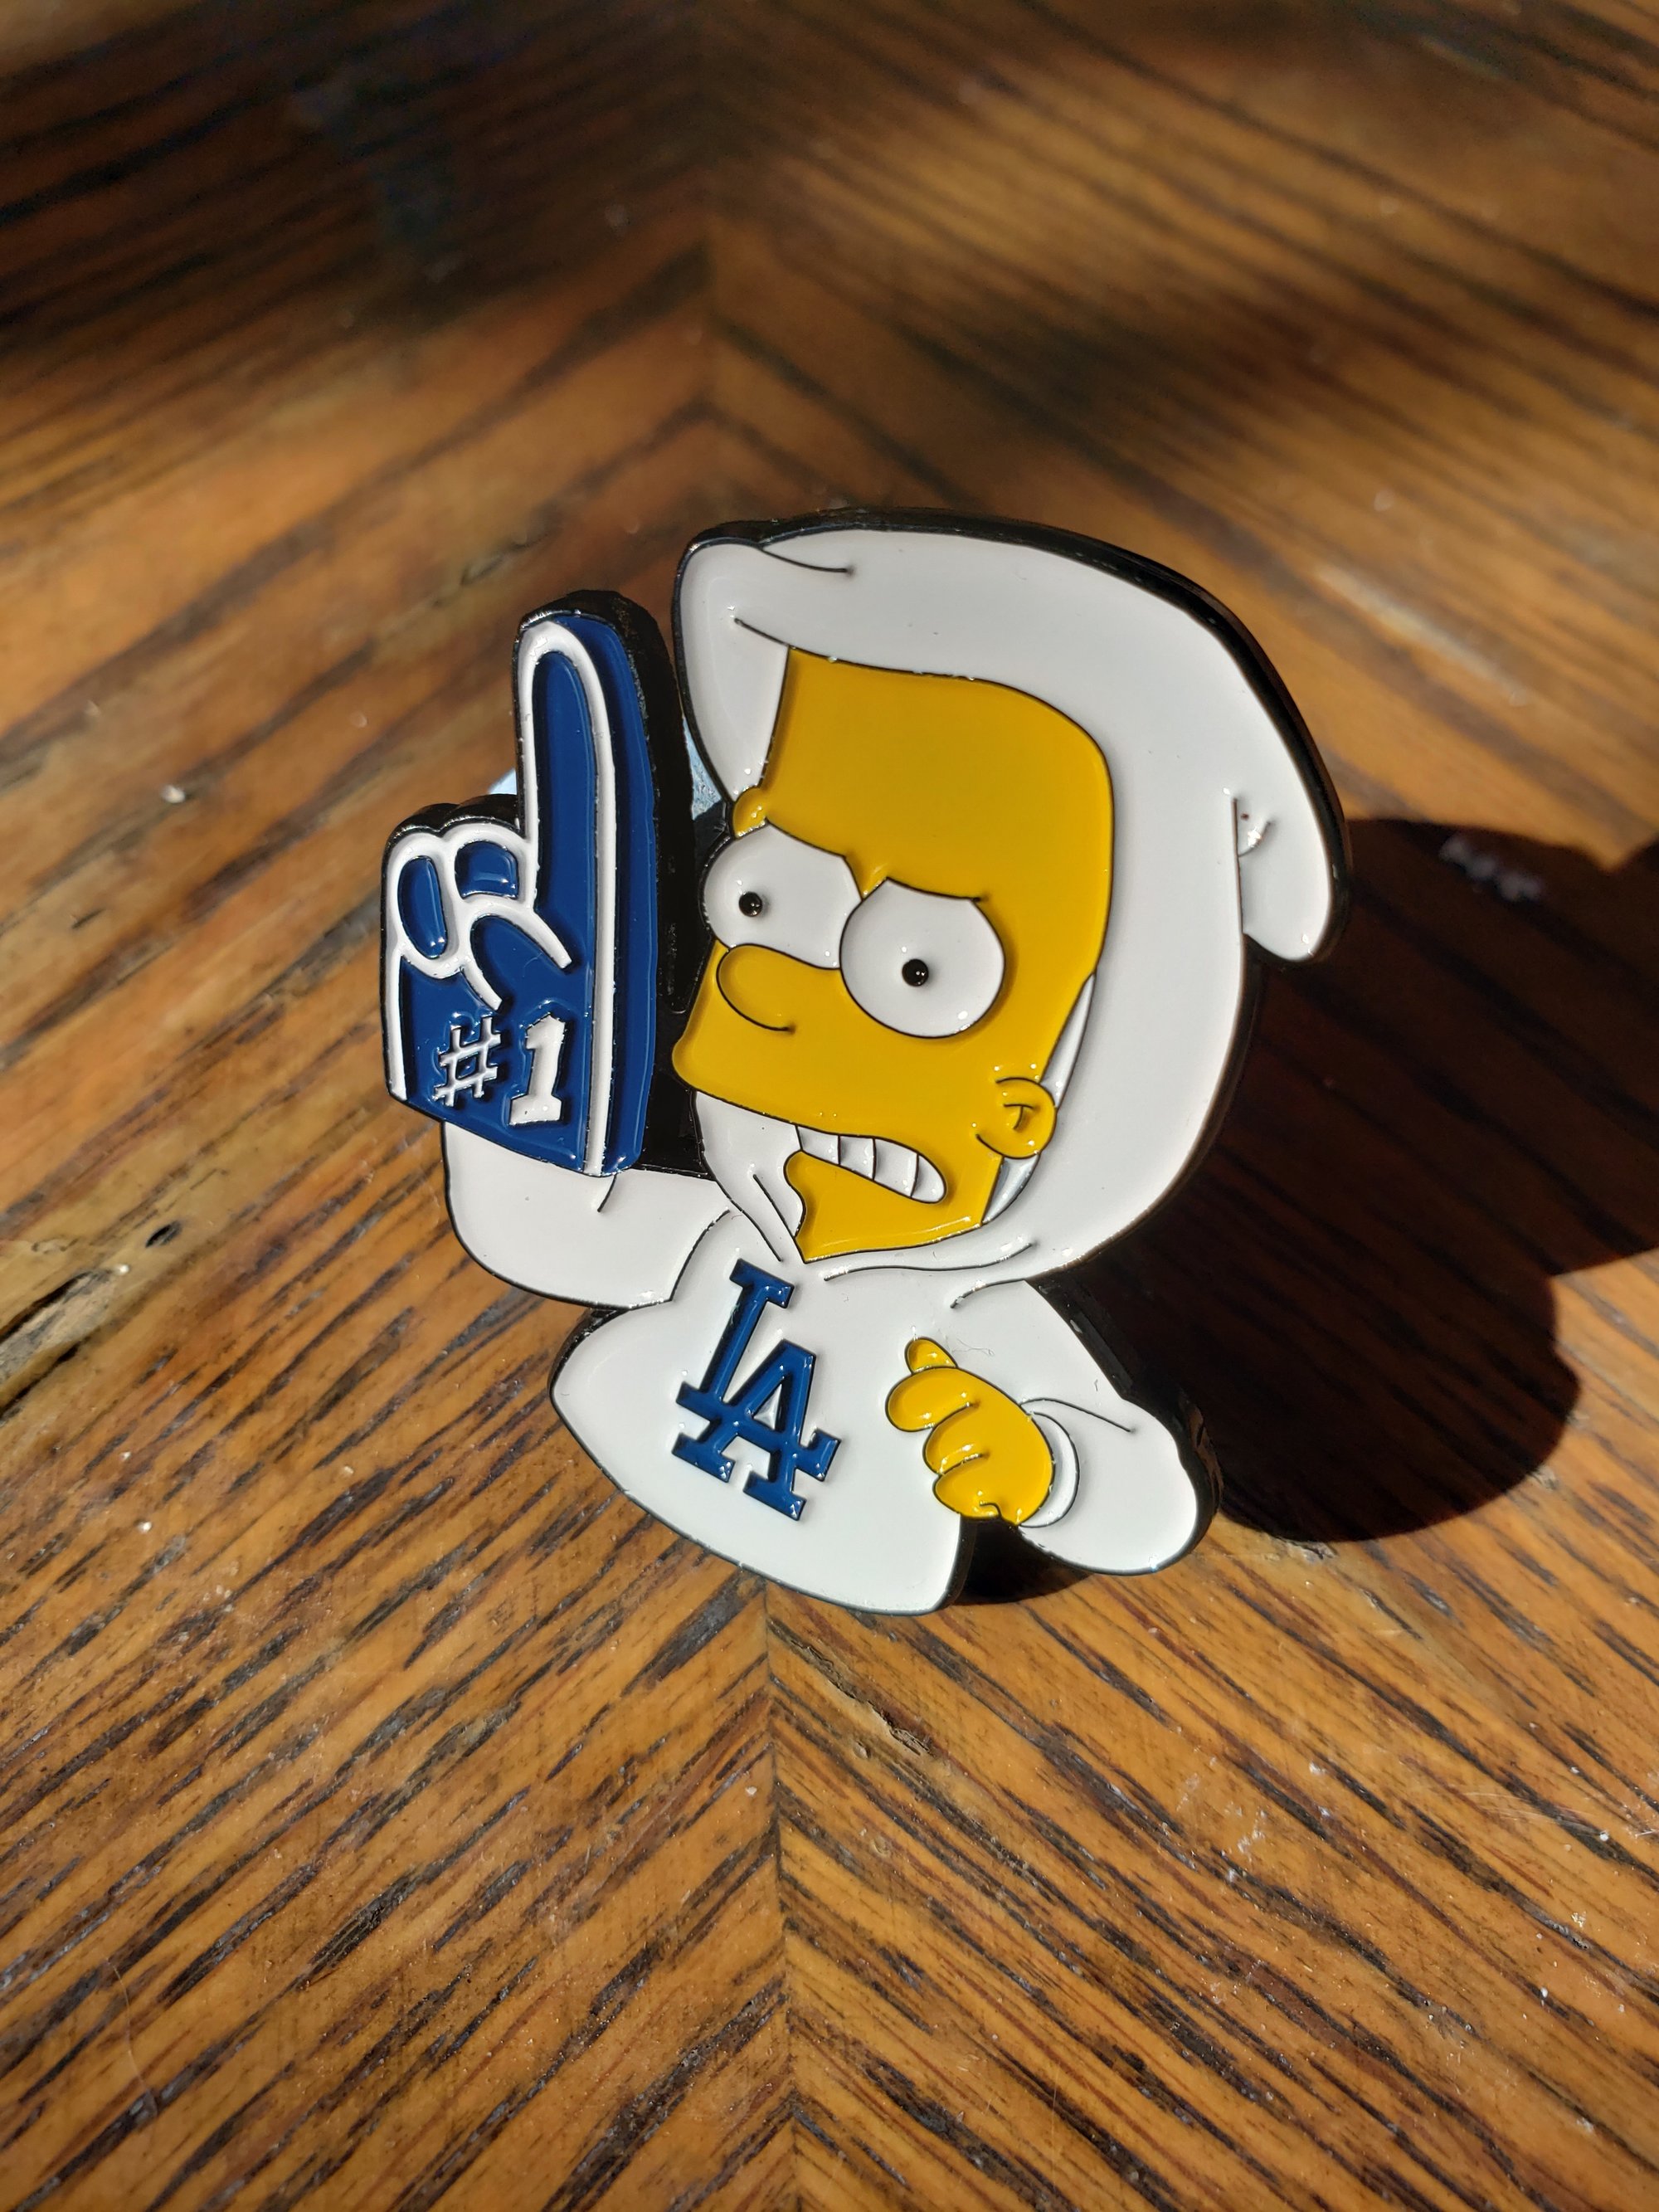 Pin on Bart simpson art